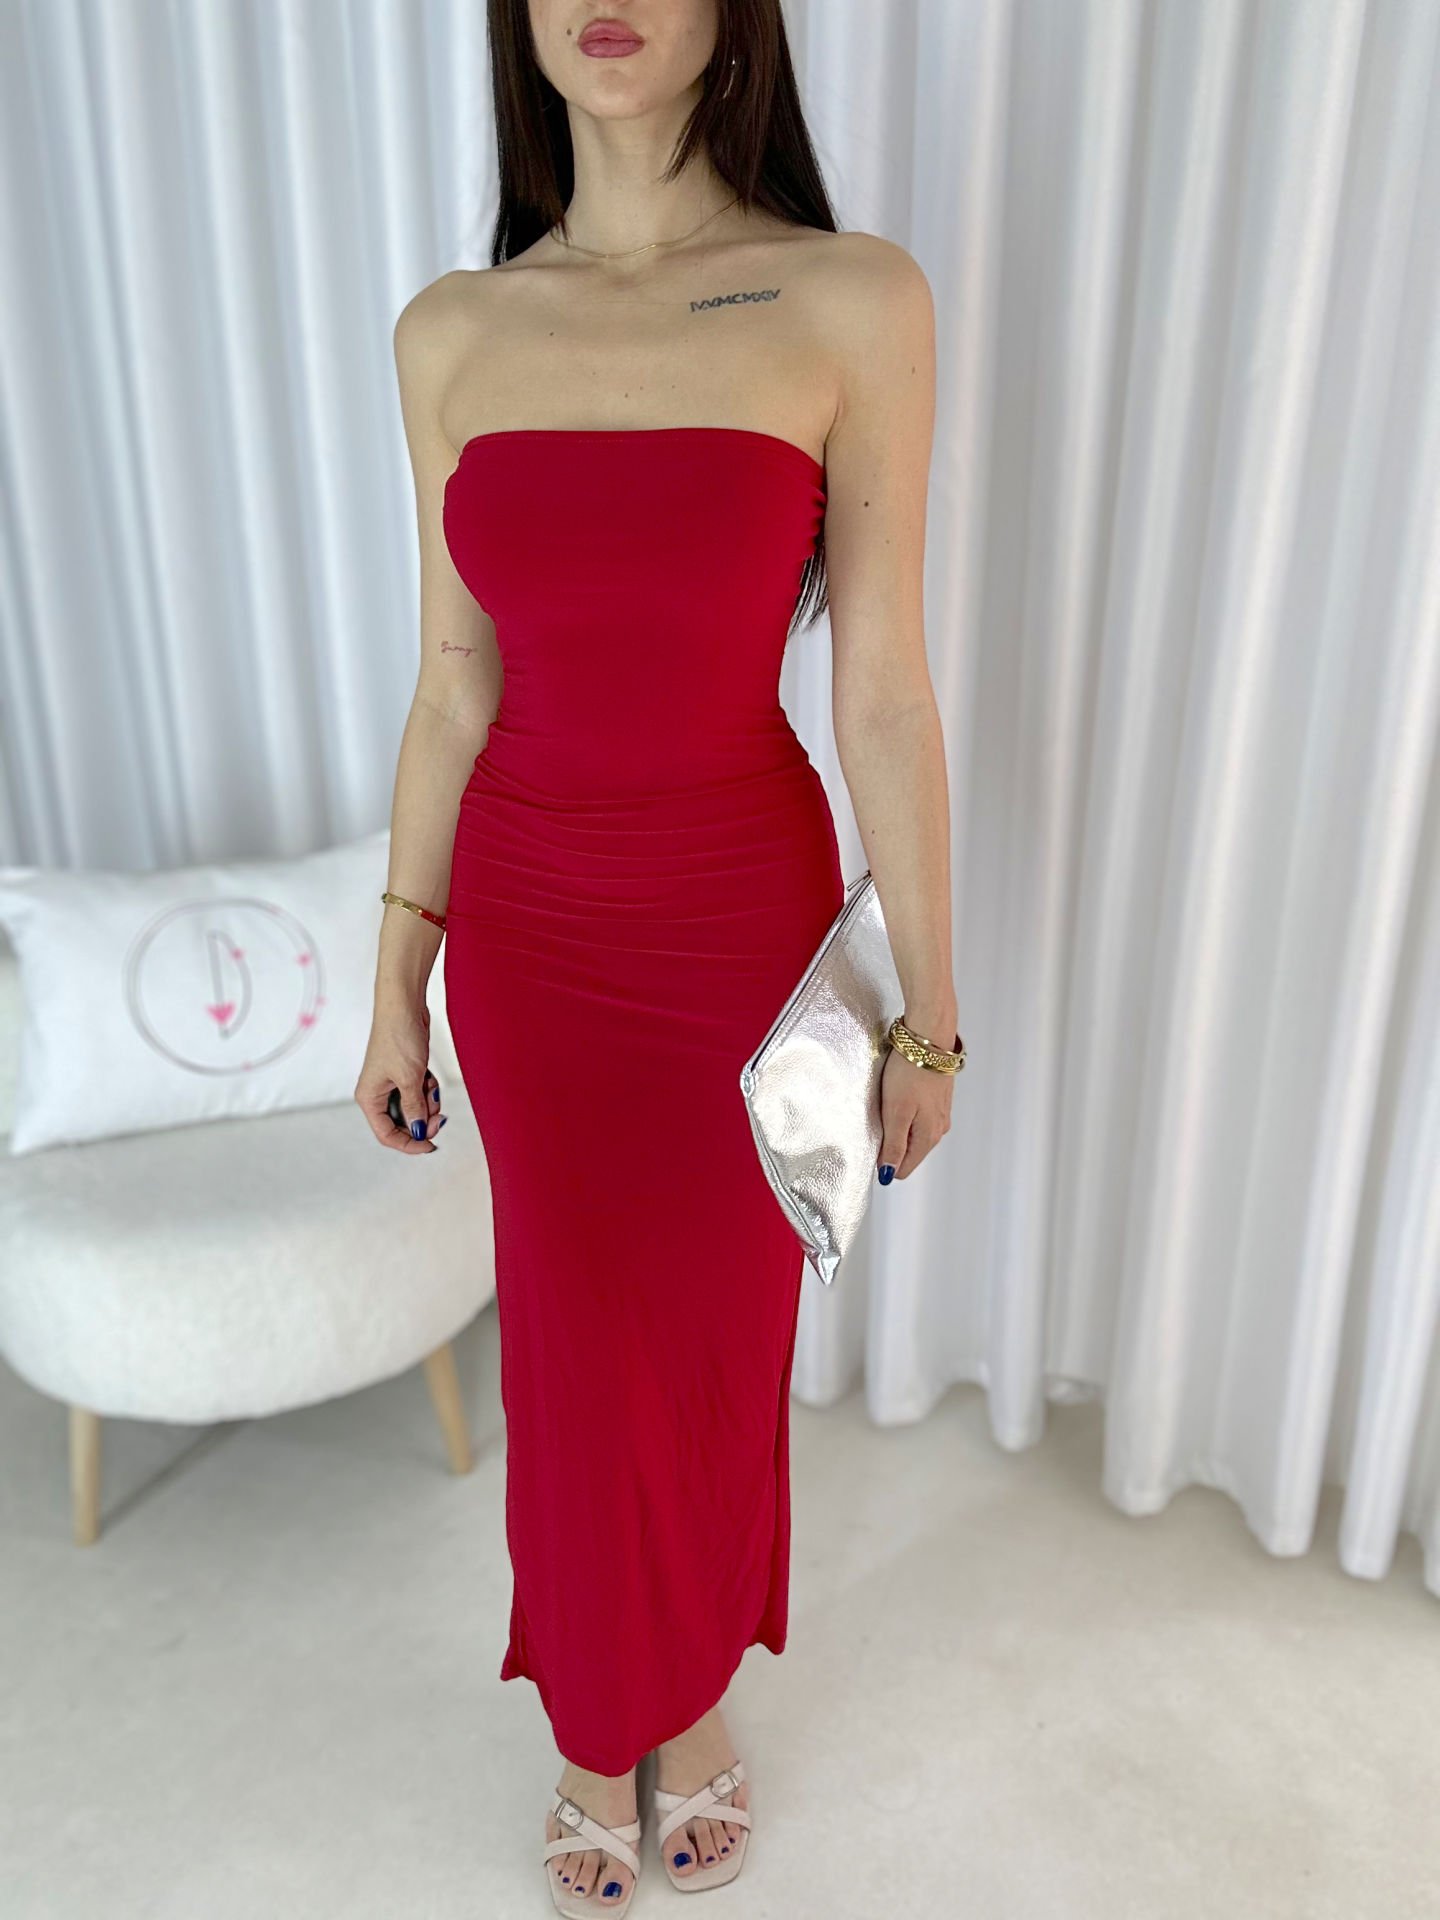 Kadın Straplez Arkası Yırtmaçlı Maxi Elbise Kırmızı